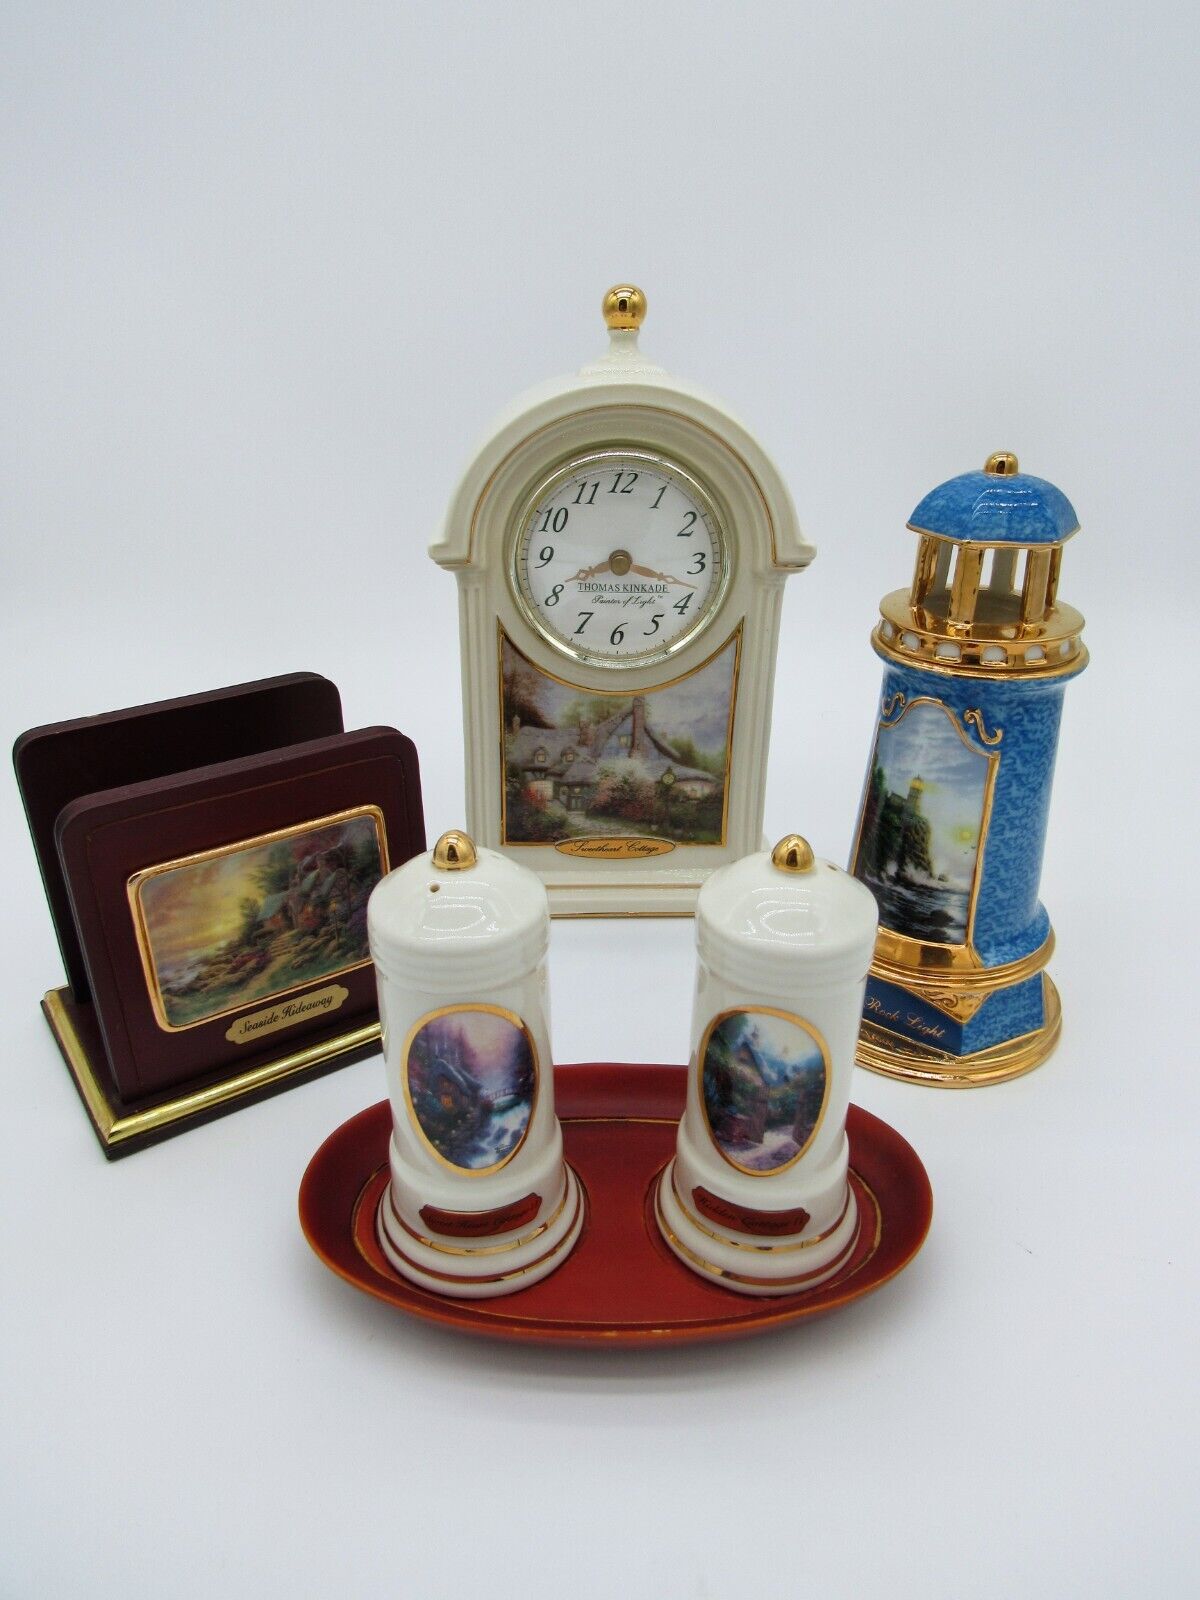 LOT of 4 Thomas Kinkade Decorations: Clock, Shakers, Napkin Holder, Lighthouse